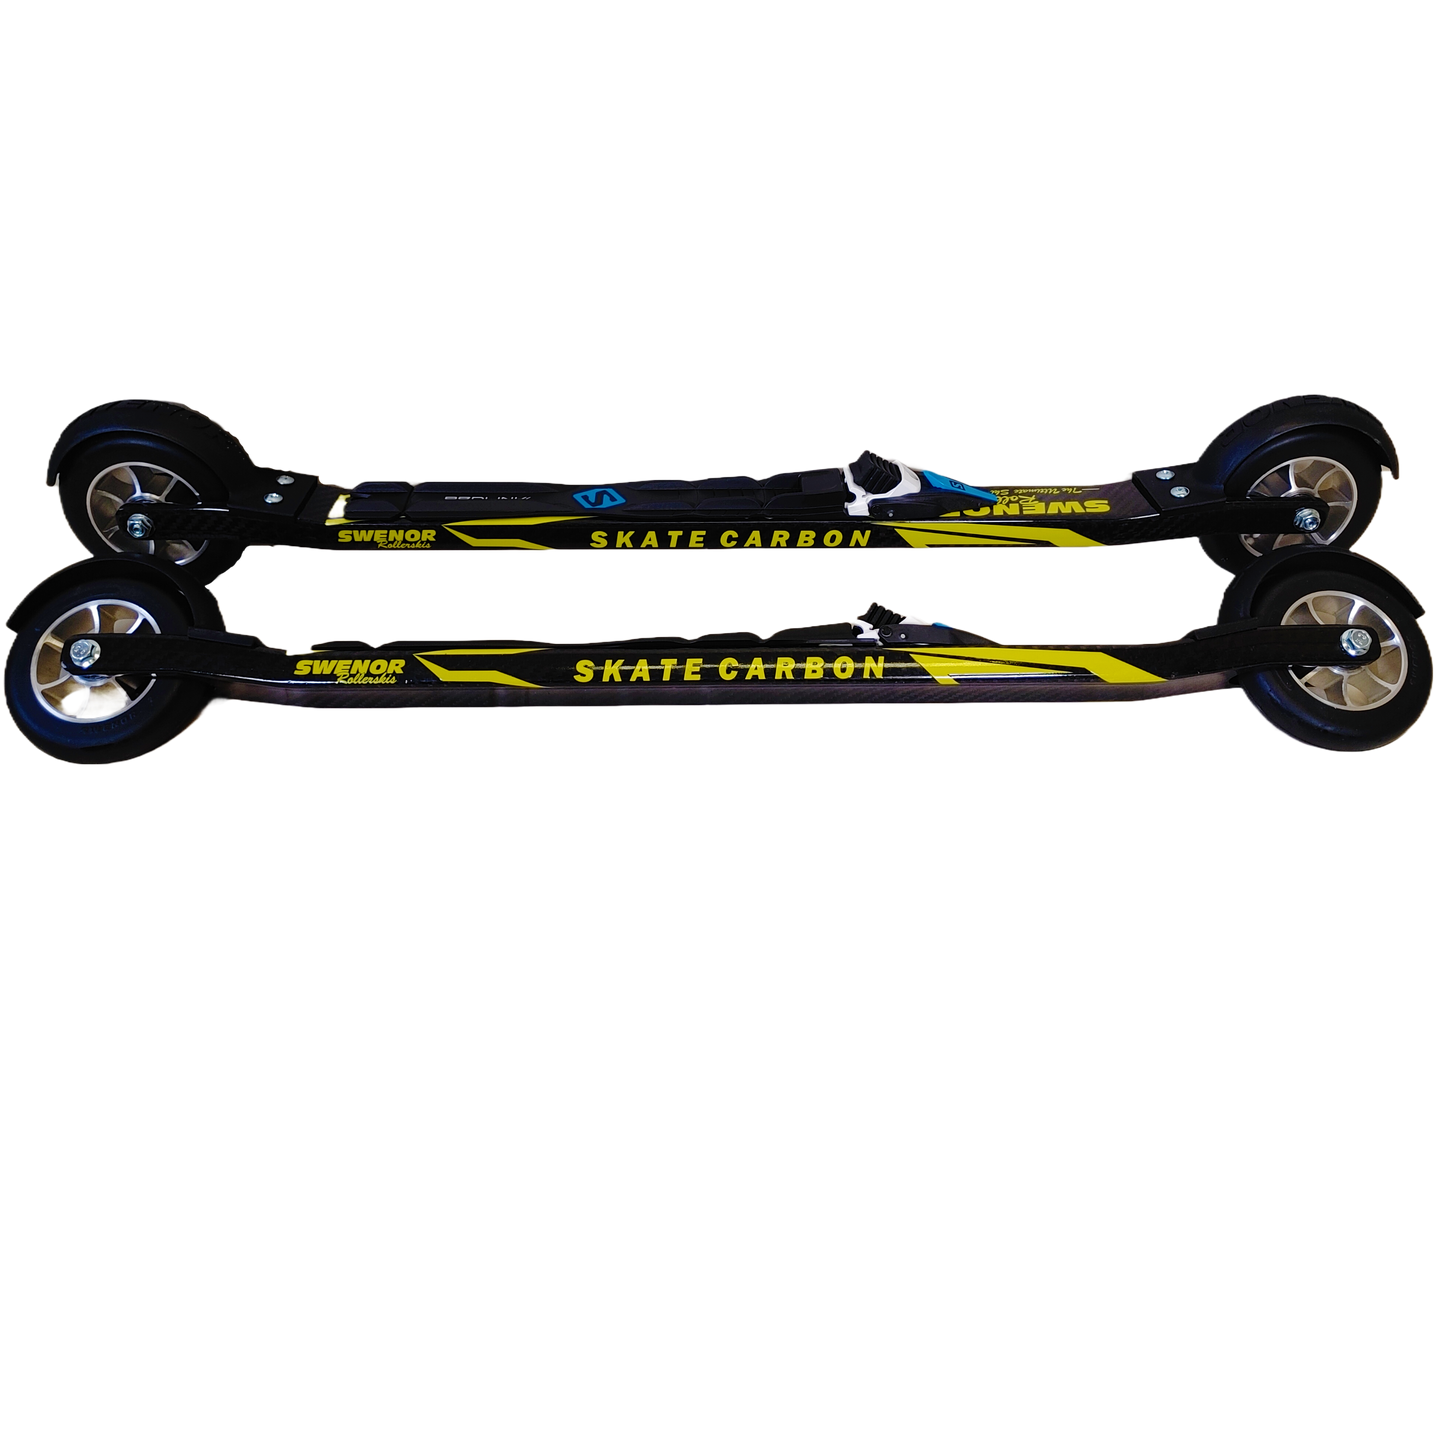 A Carbon fibre skate rollerski.